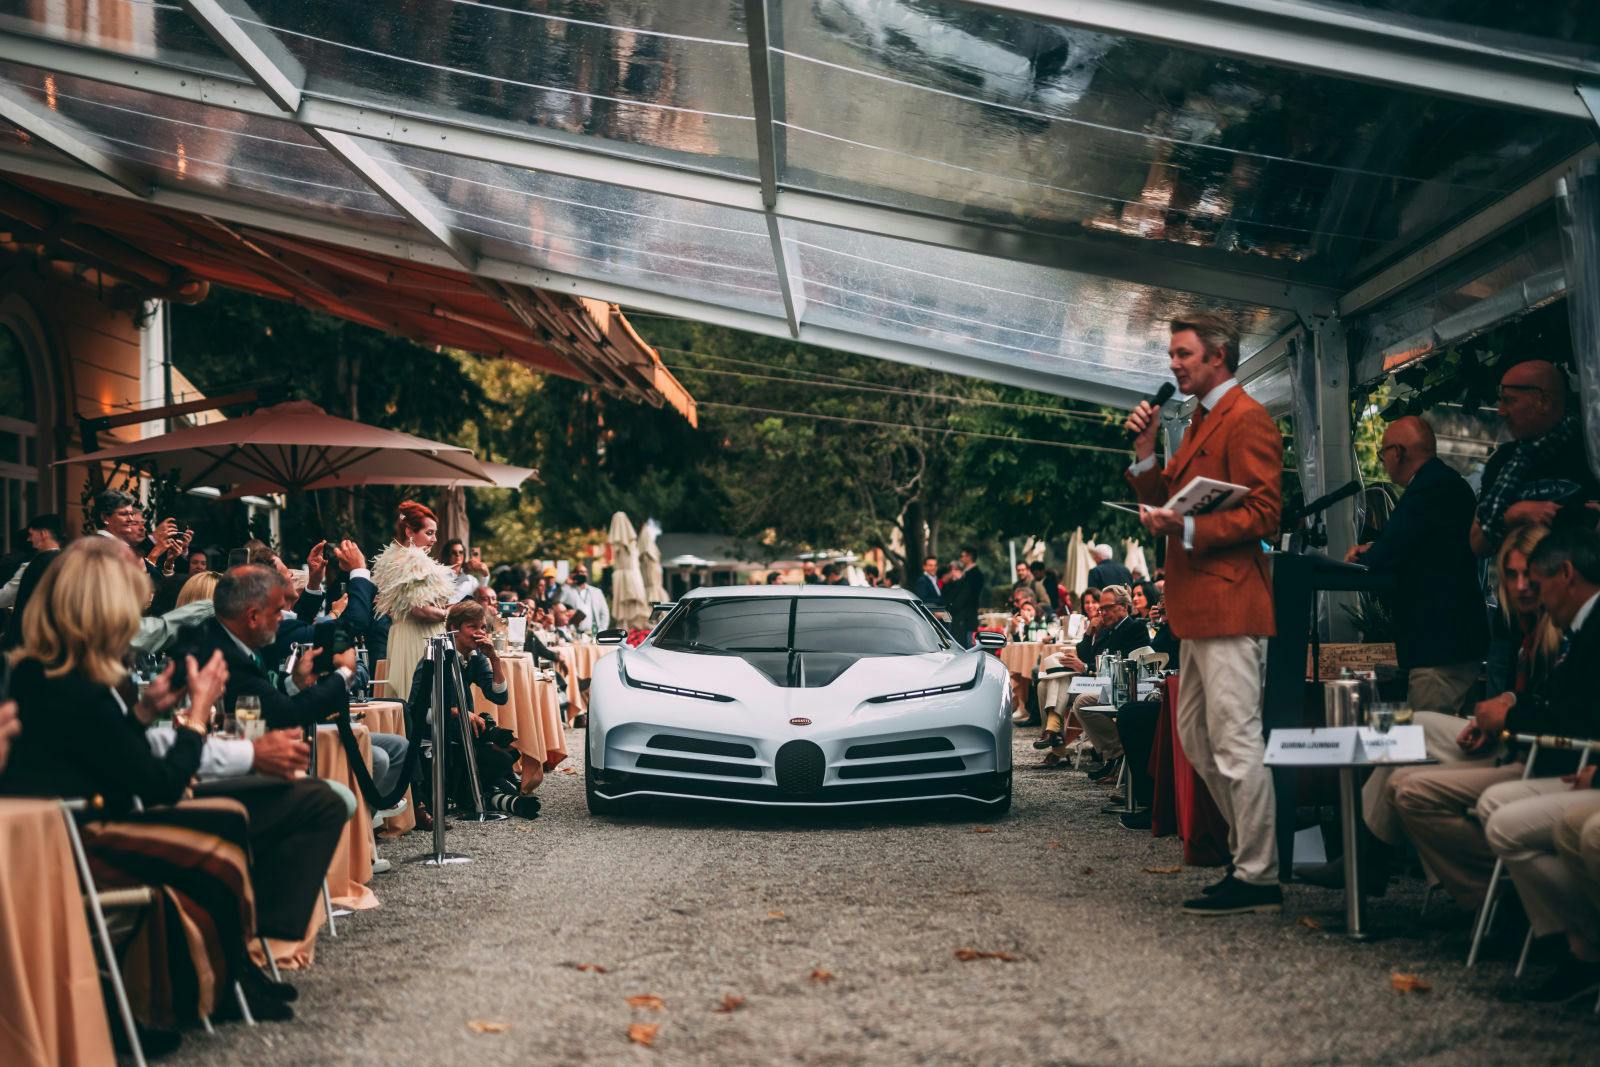 L'apparition de la Centodieci au Concorso d'Eleganza à Villa d'Este a été l'un des moments forts de la saison automobile de cette année.